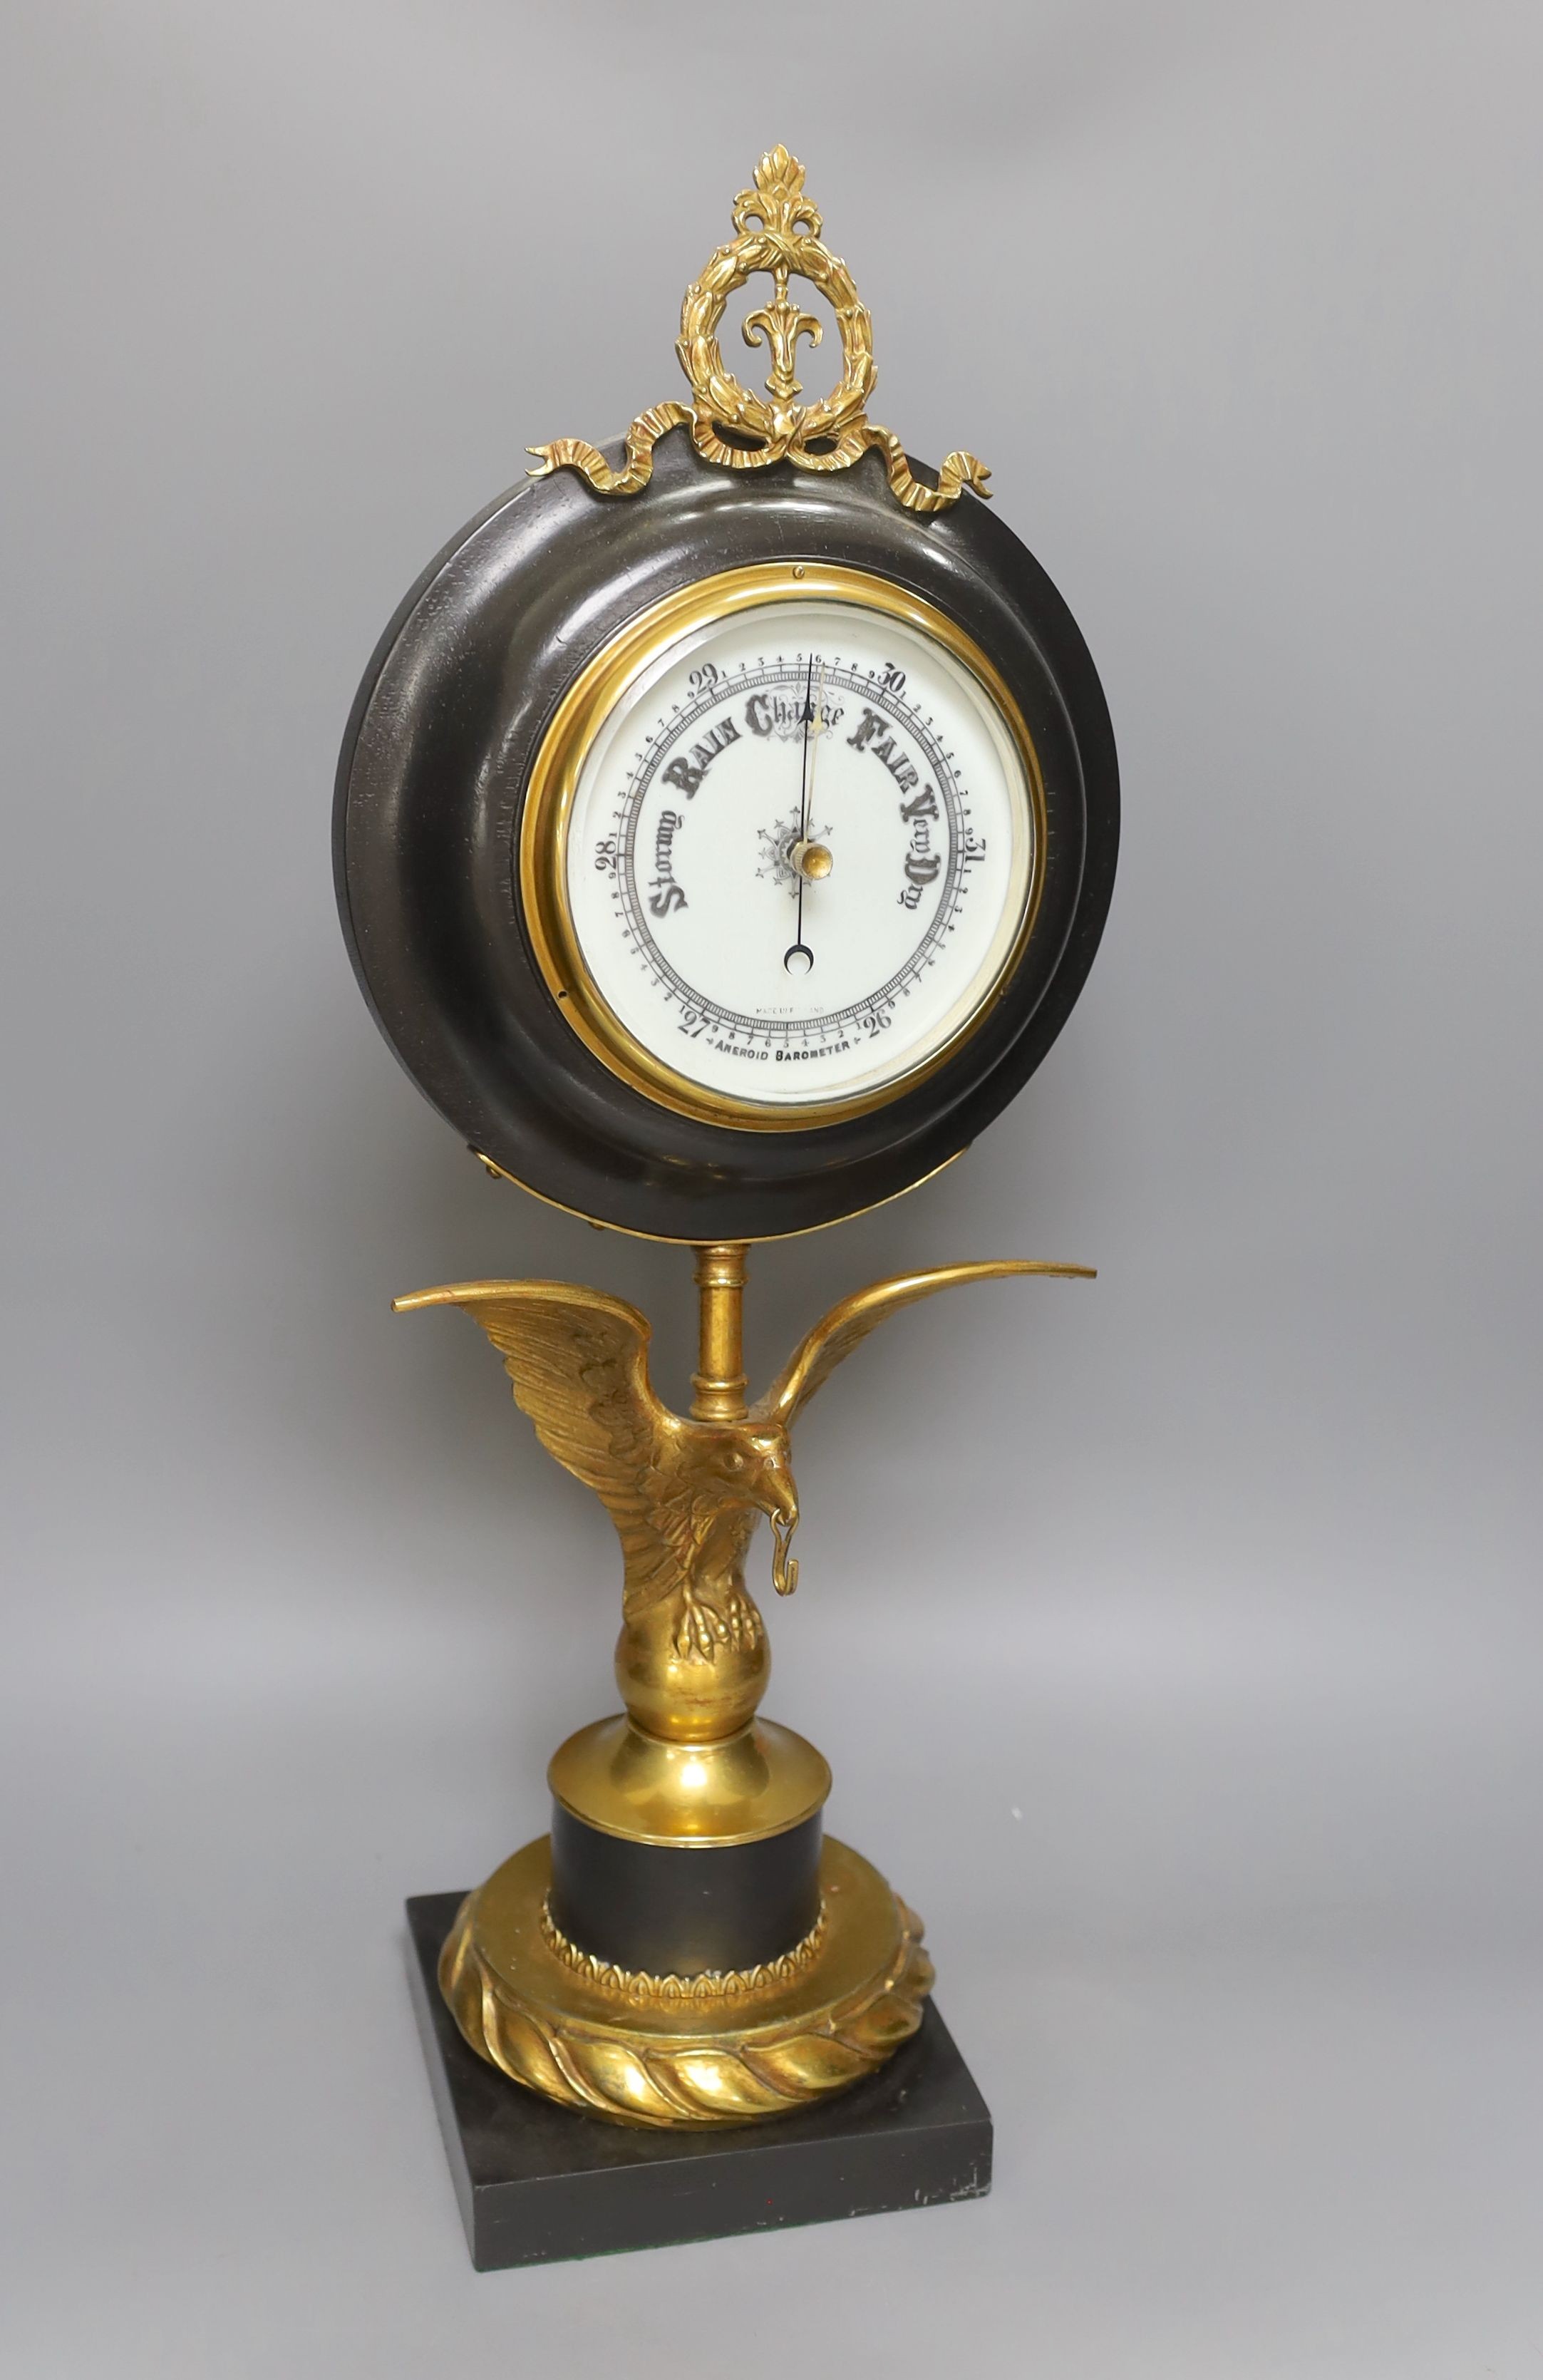 A large desk barometer on a gilt metal eagle mount - 58.5cm tall